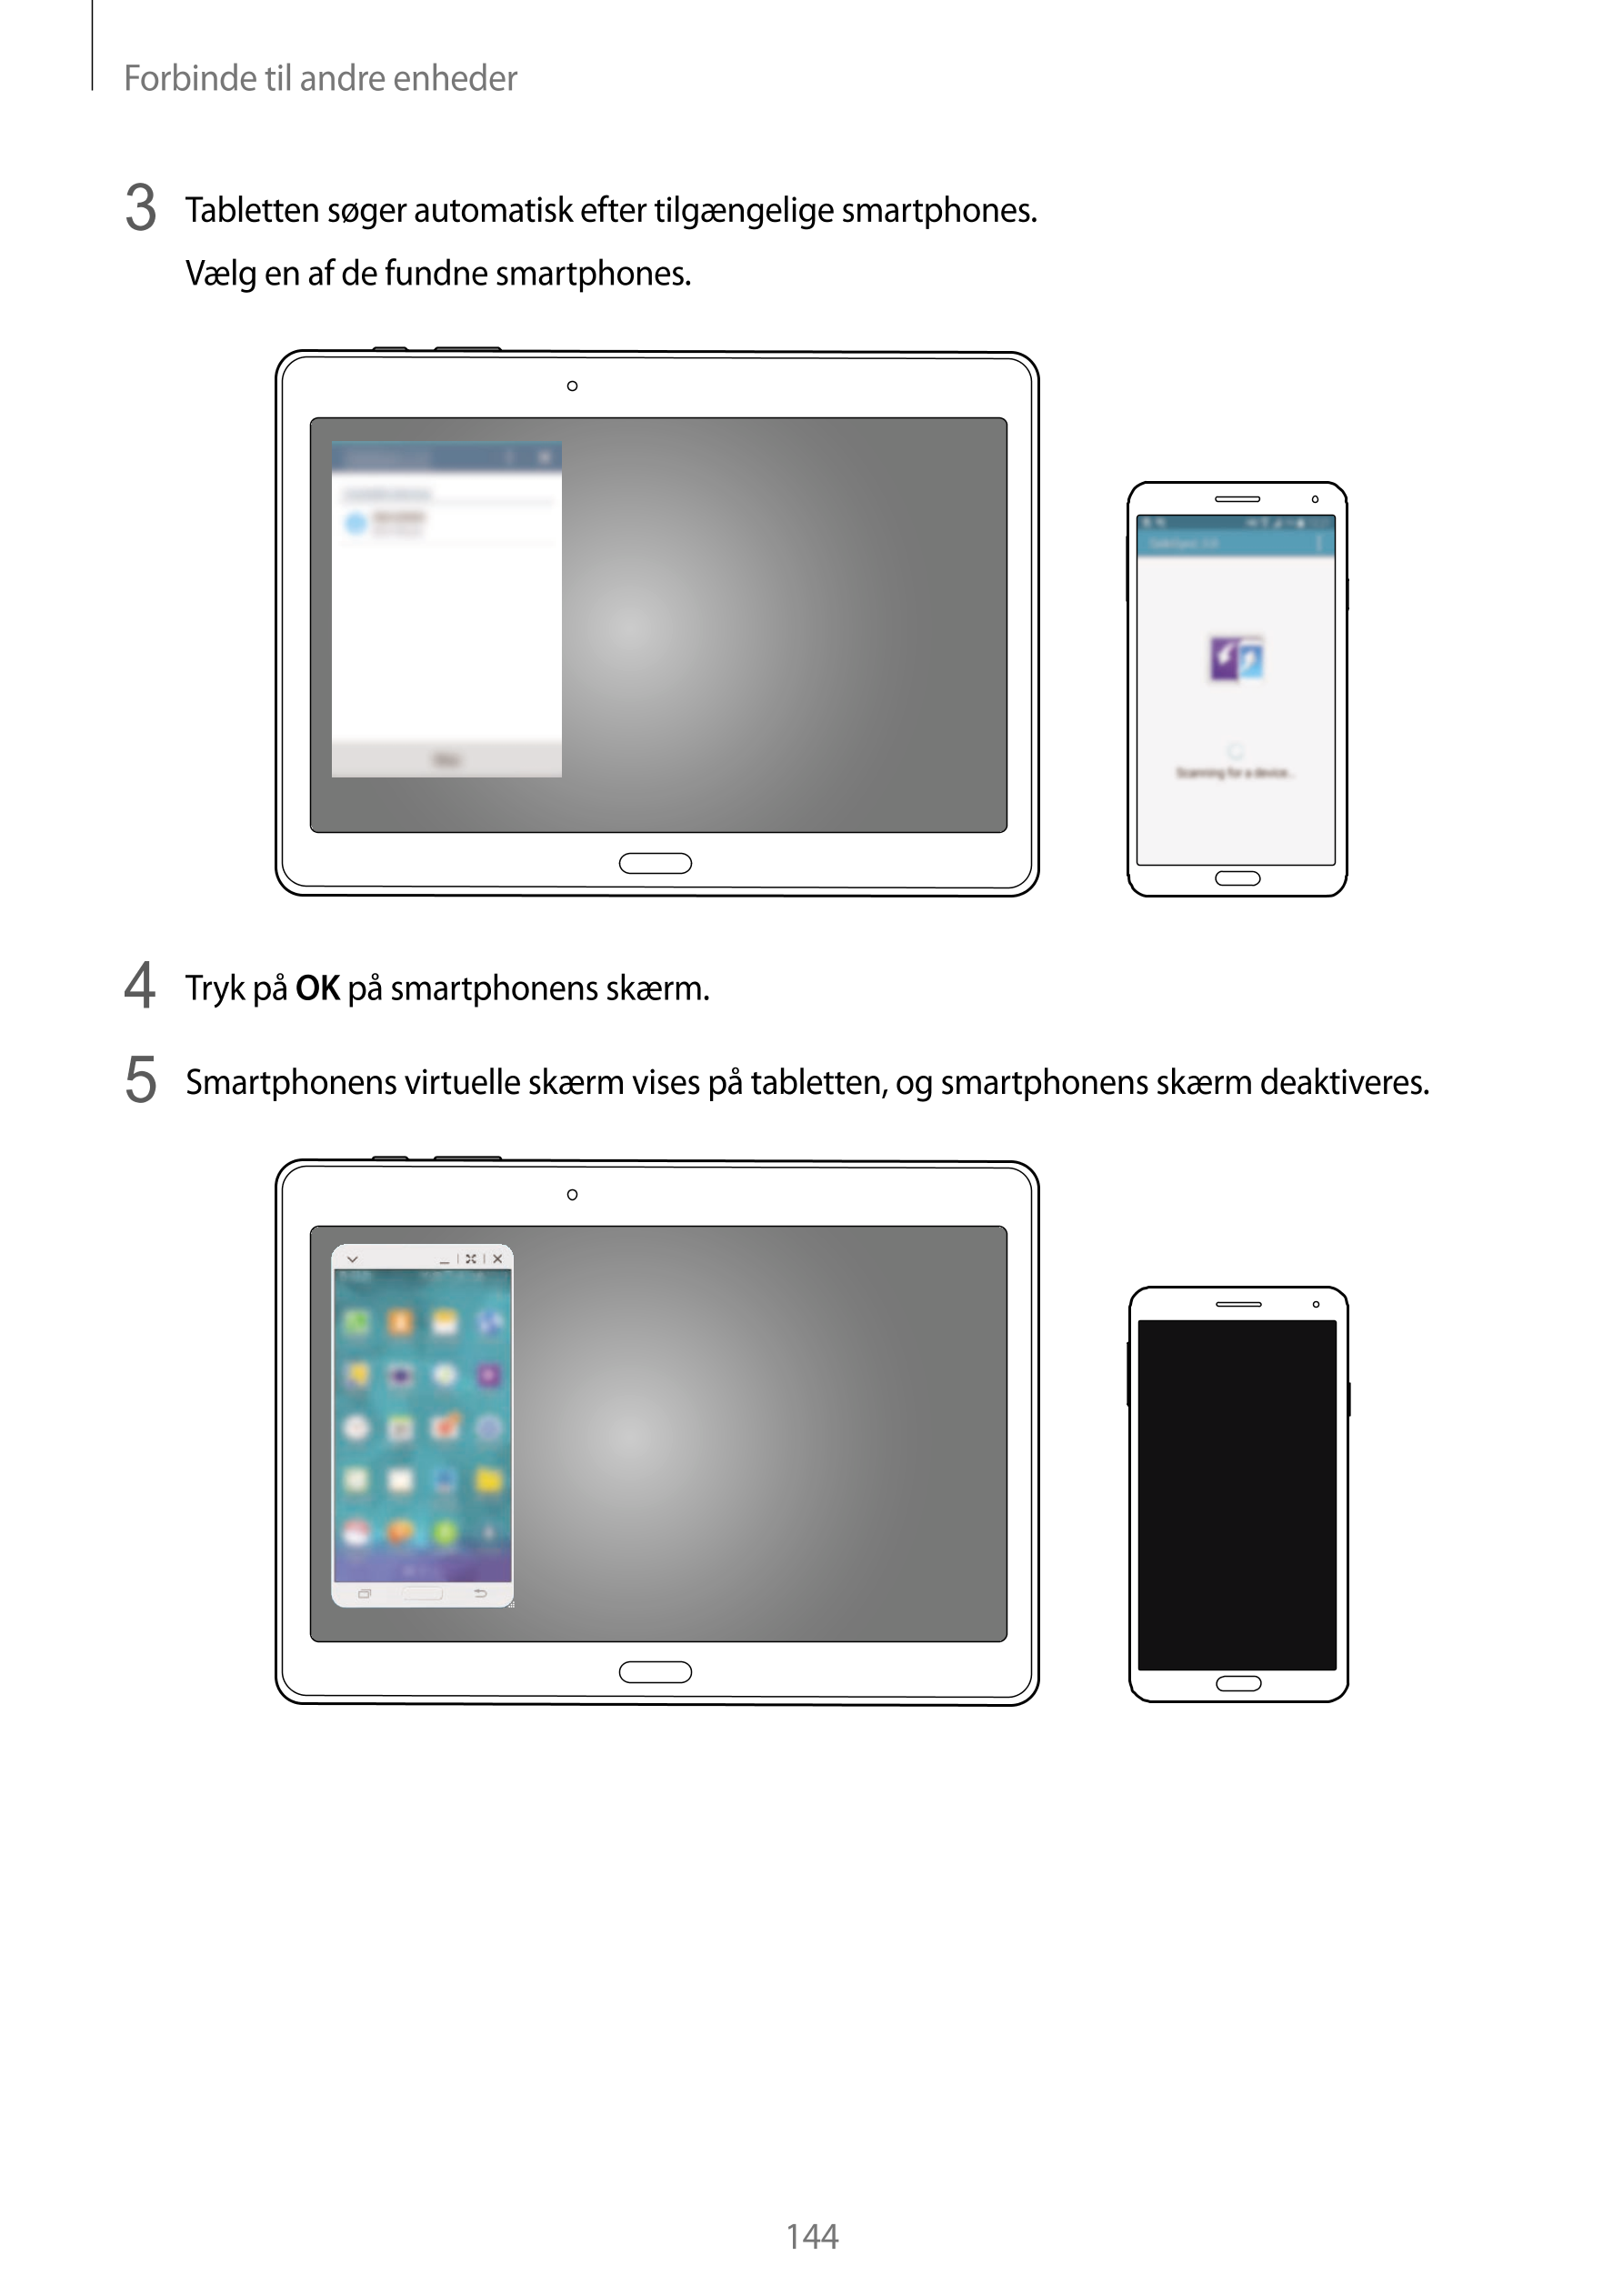 Forbinde til andre enheder
3  Tabletten søger automatisk efter tilgængelige smartphones.
Vælg en af de fundne smartphones.
4  Tr